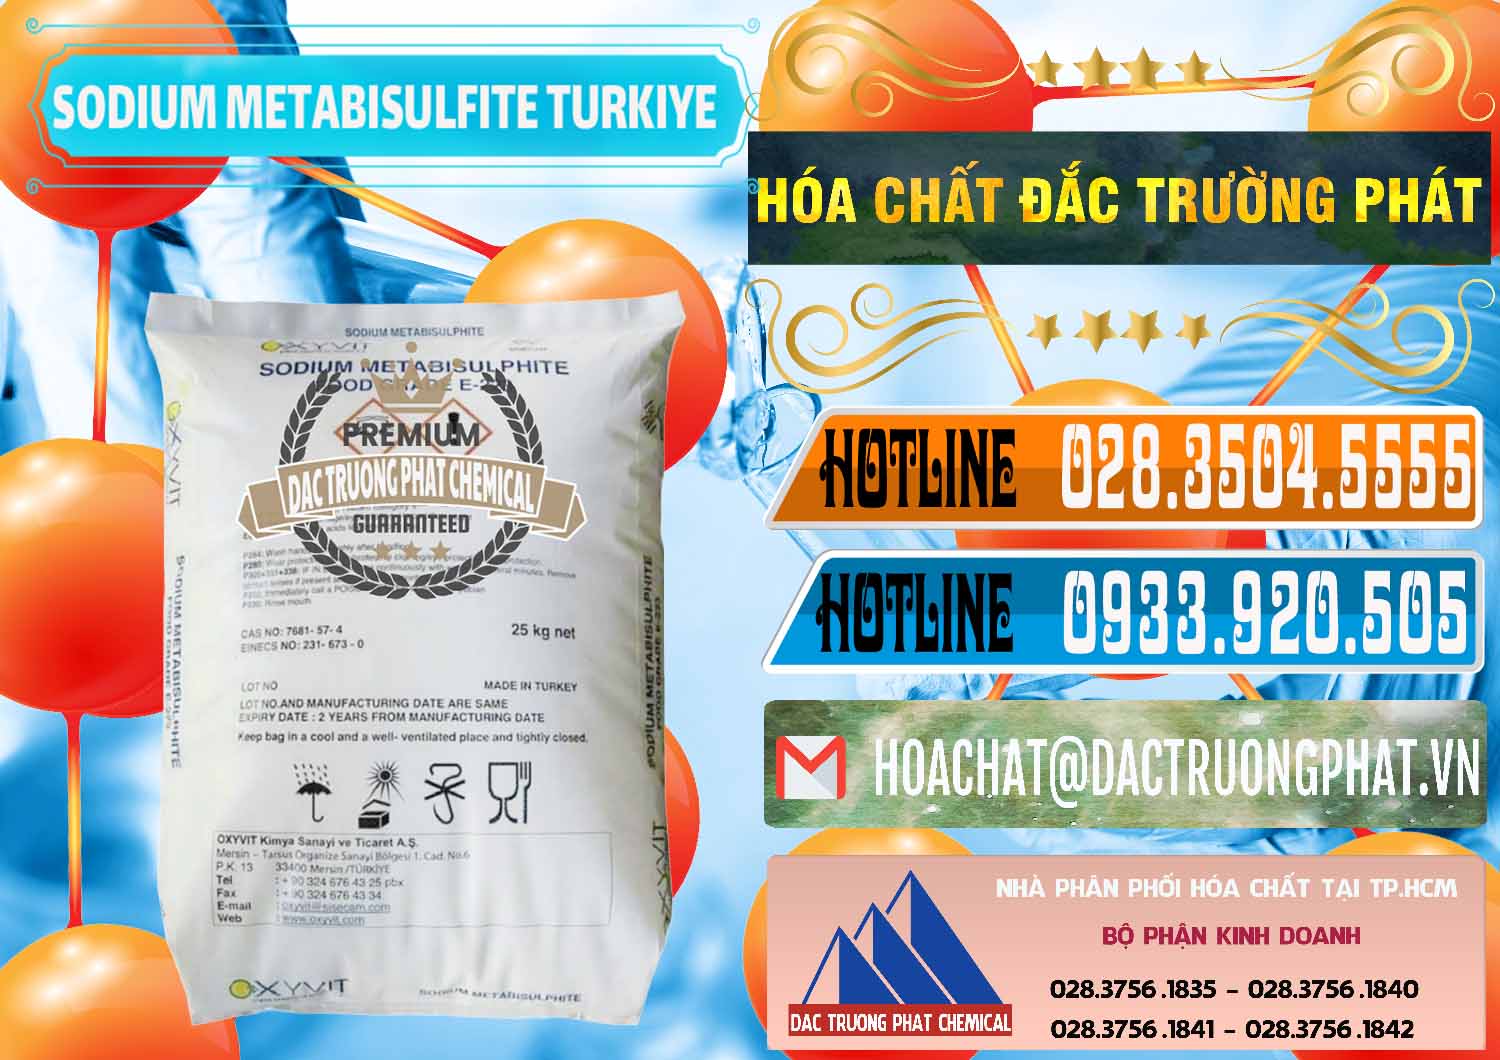 Nơi chuyên bán - cung cấp Sodium Metabisulfite - NA2S2O5 Food Grade E-223 Thổ Nhĩ Kỳ Turkey - 0413 - Nơi bán và cung cấp hóa chất tại TP.HCM - stmp.net